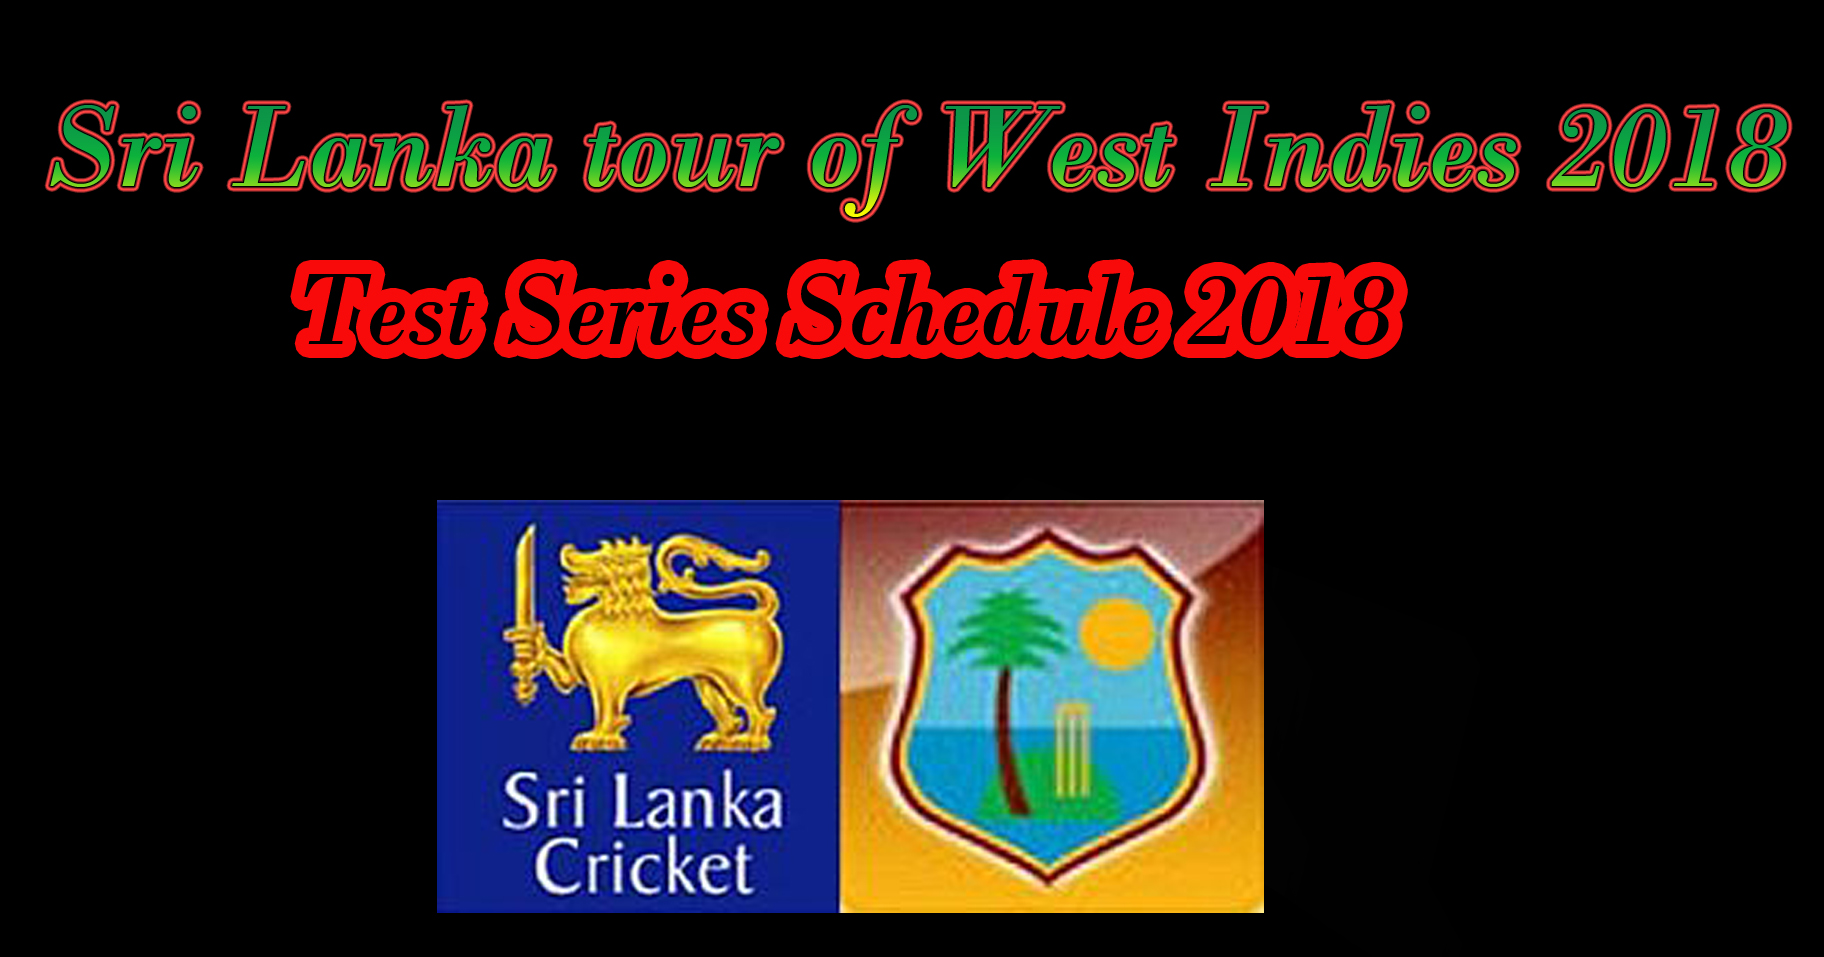 sri lanka tour west indies 2018 schedule